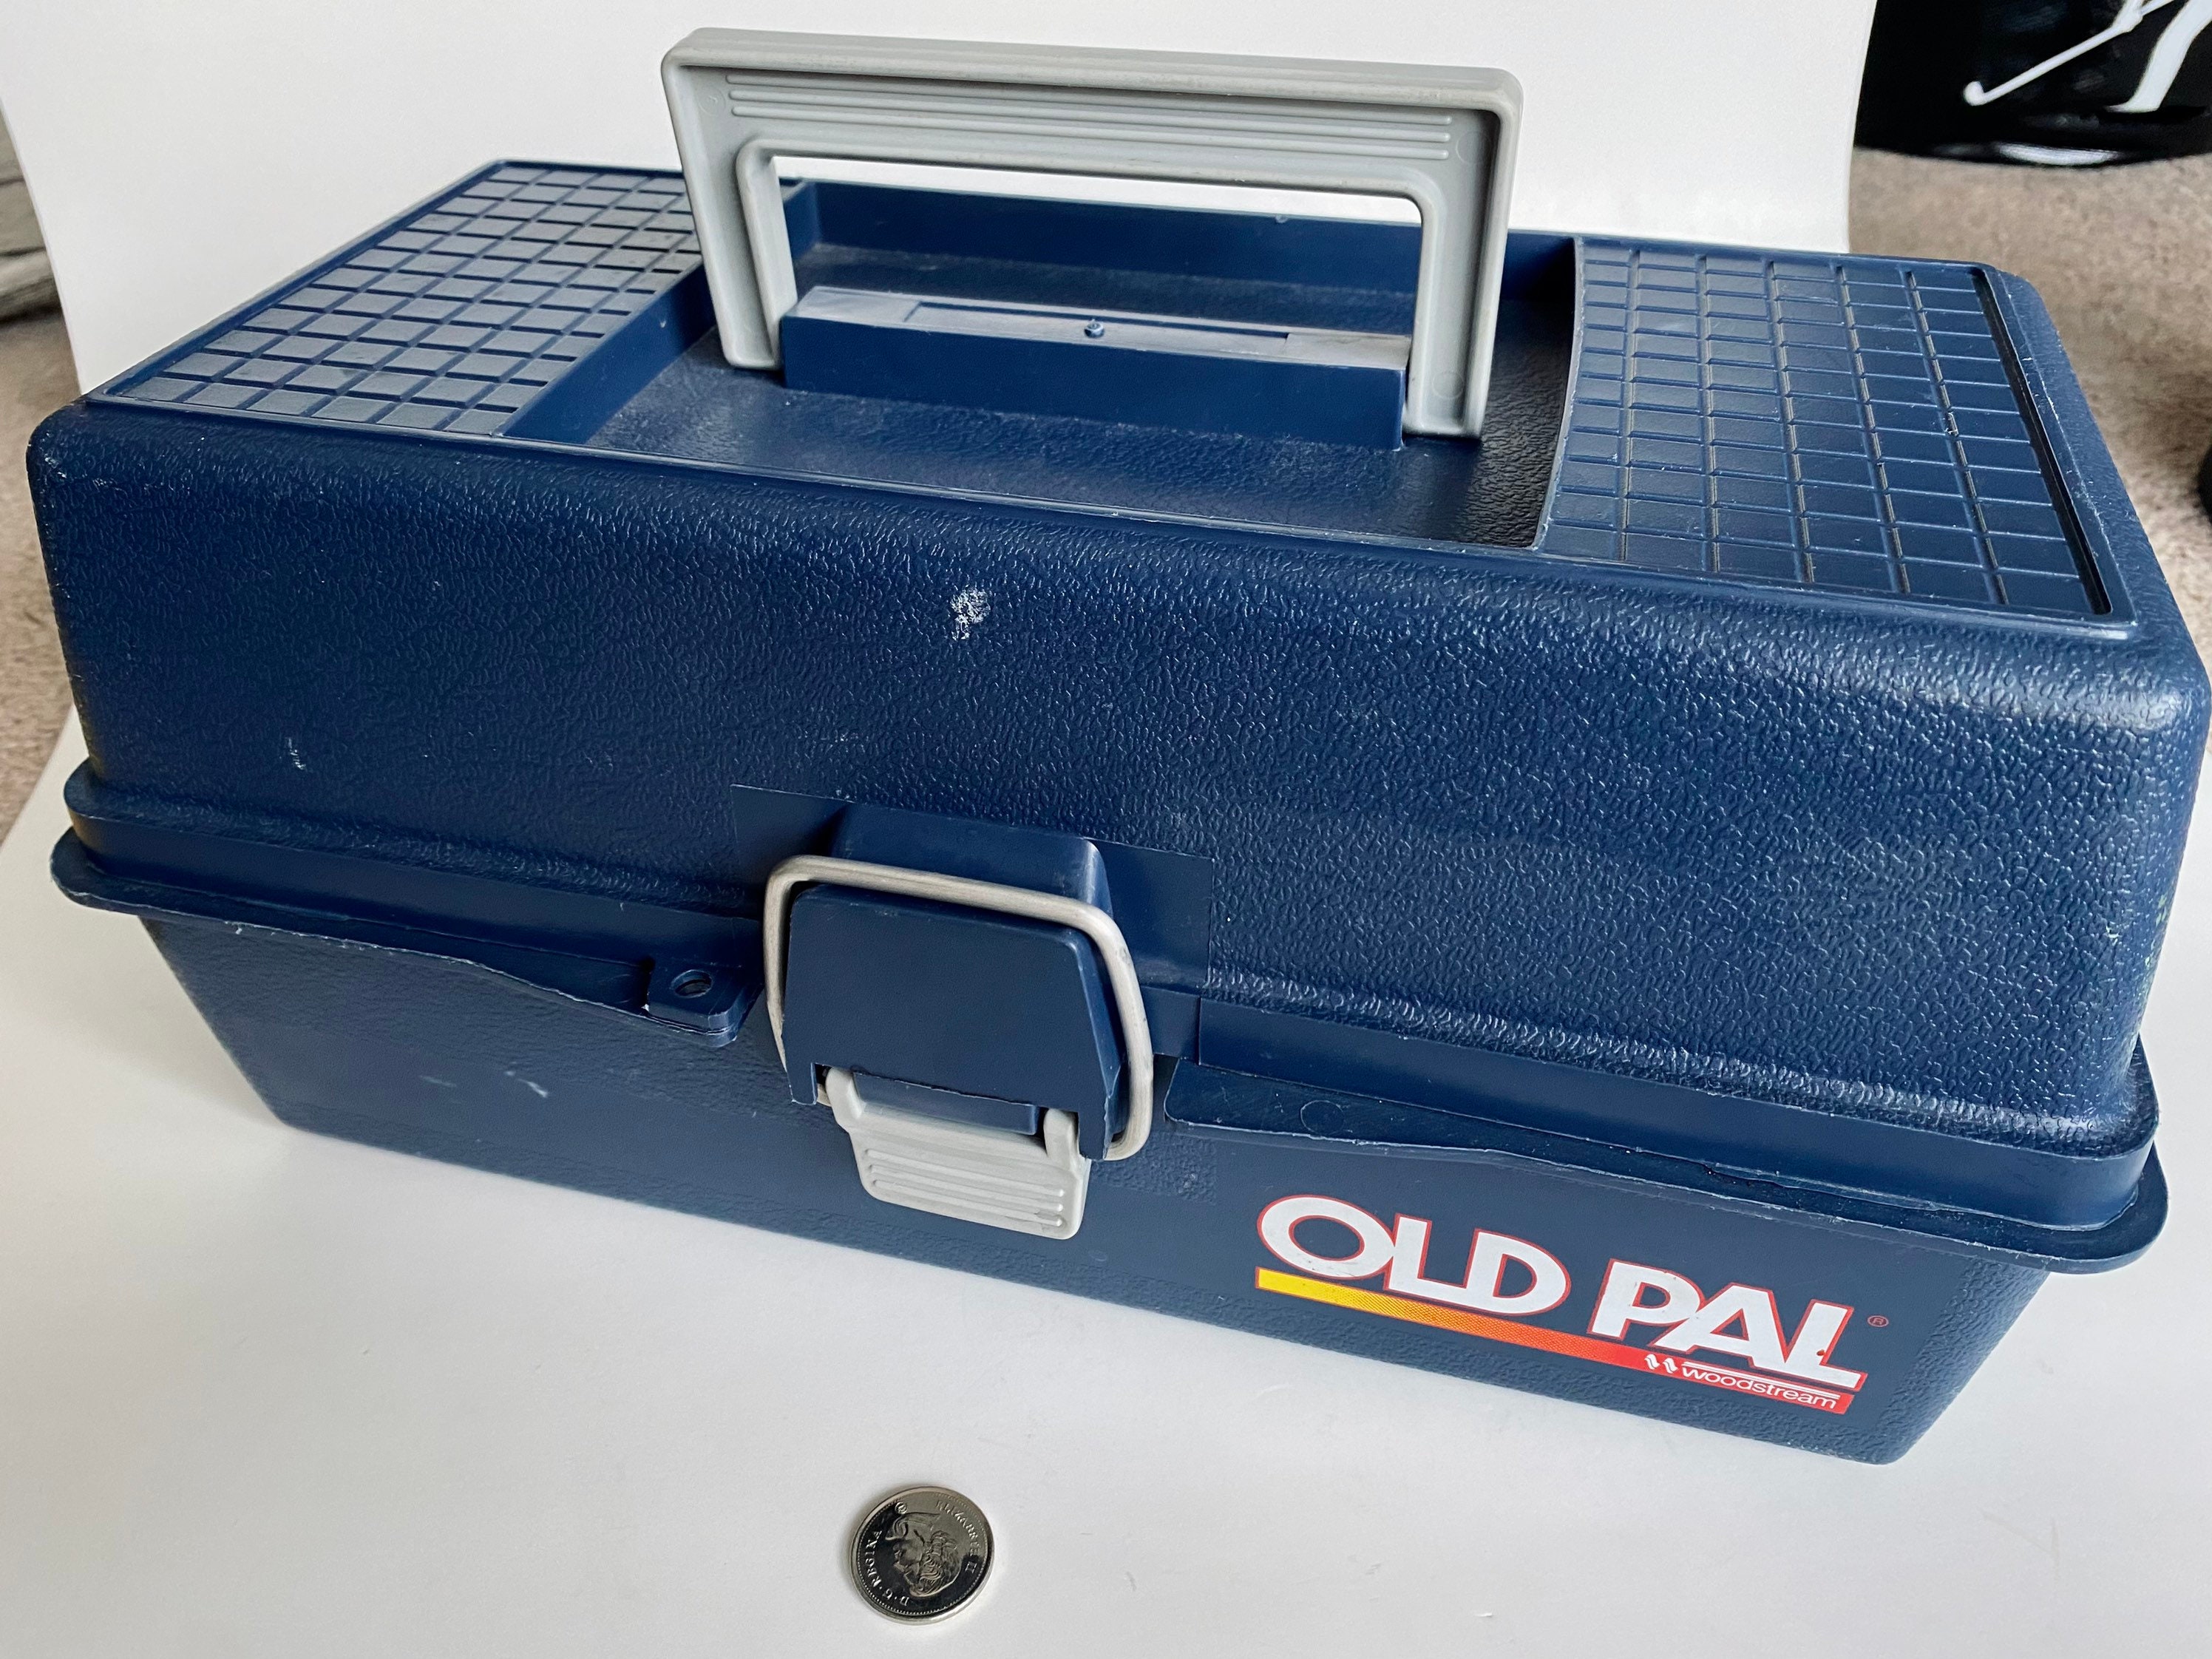 Vintage Tackle Box, Vintage Old Pal Box, Vintage Tool Box, Plastic